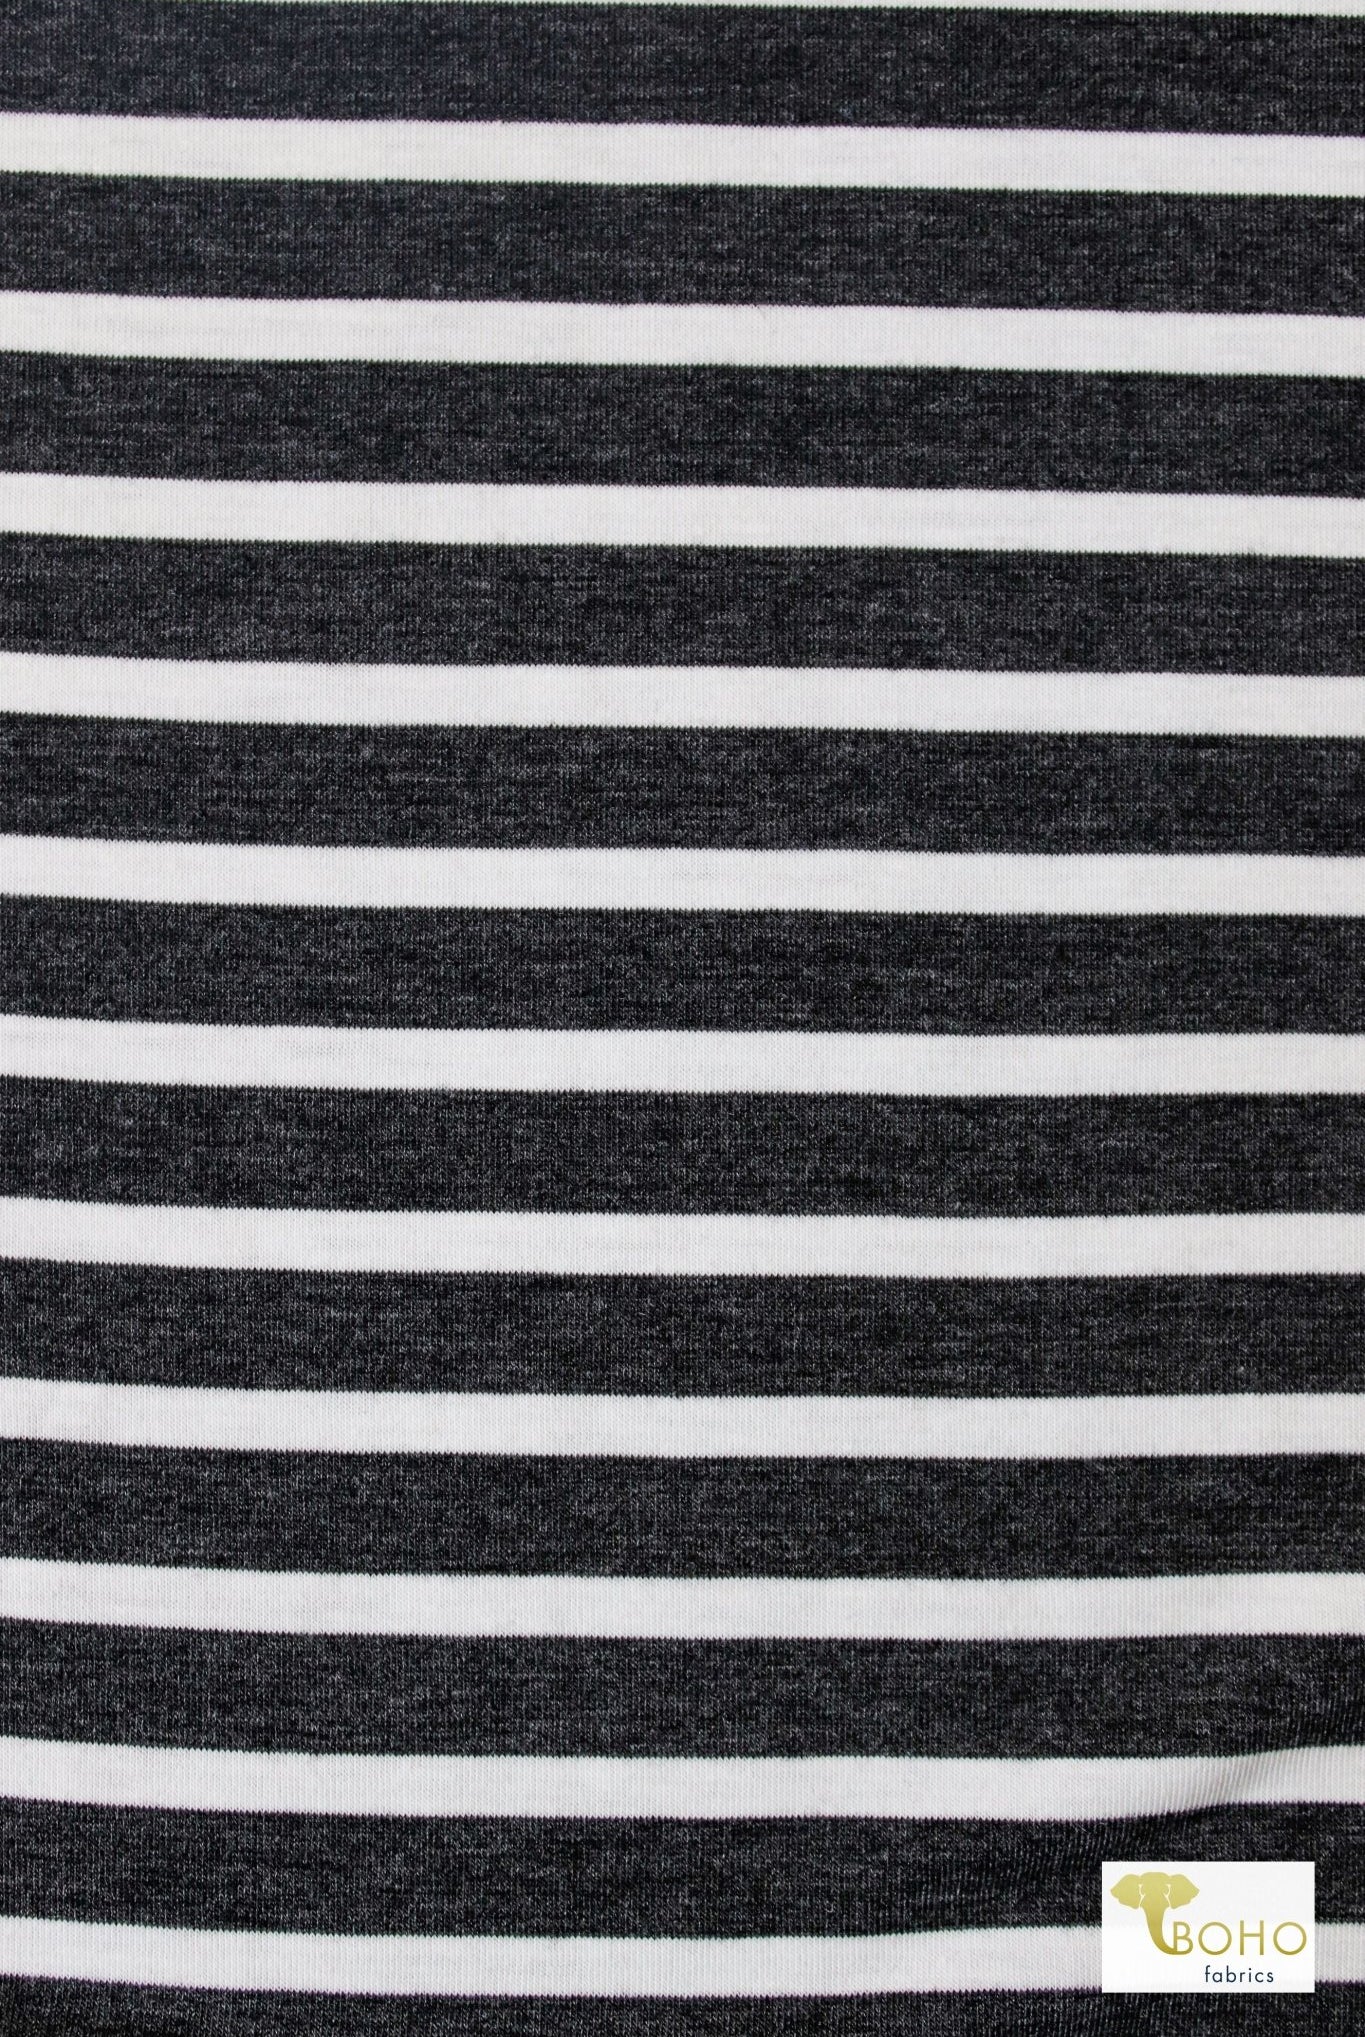 Tap Shoe Stripes, Jersey Knit - Boho Fabrics